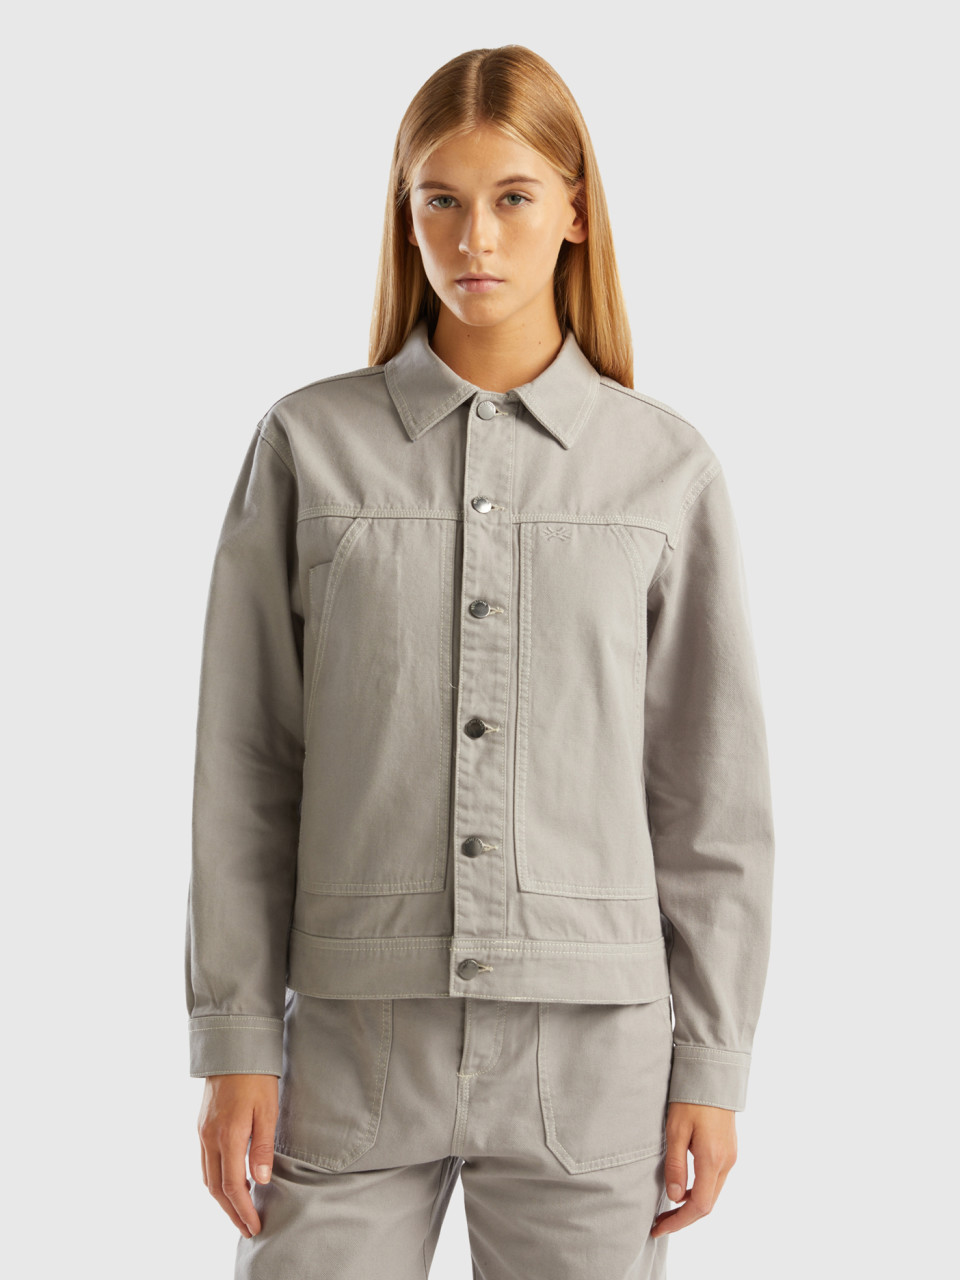 Benetton, Cotton Canvas Jacket, Light Gray, Women